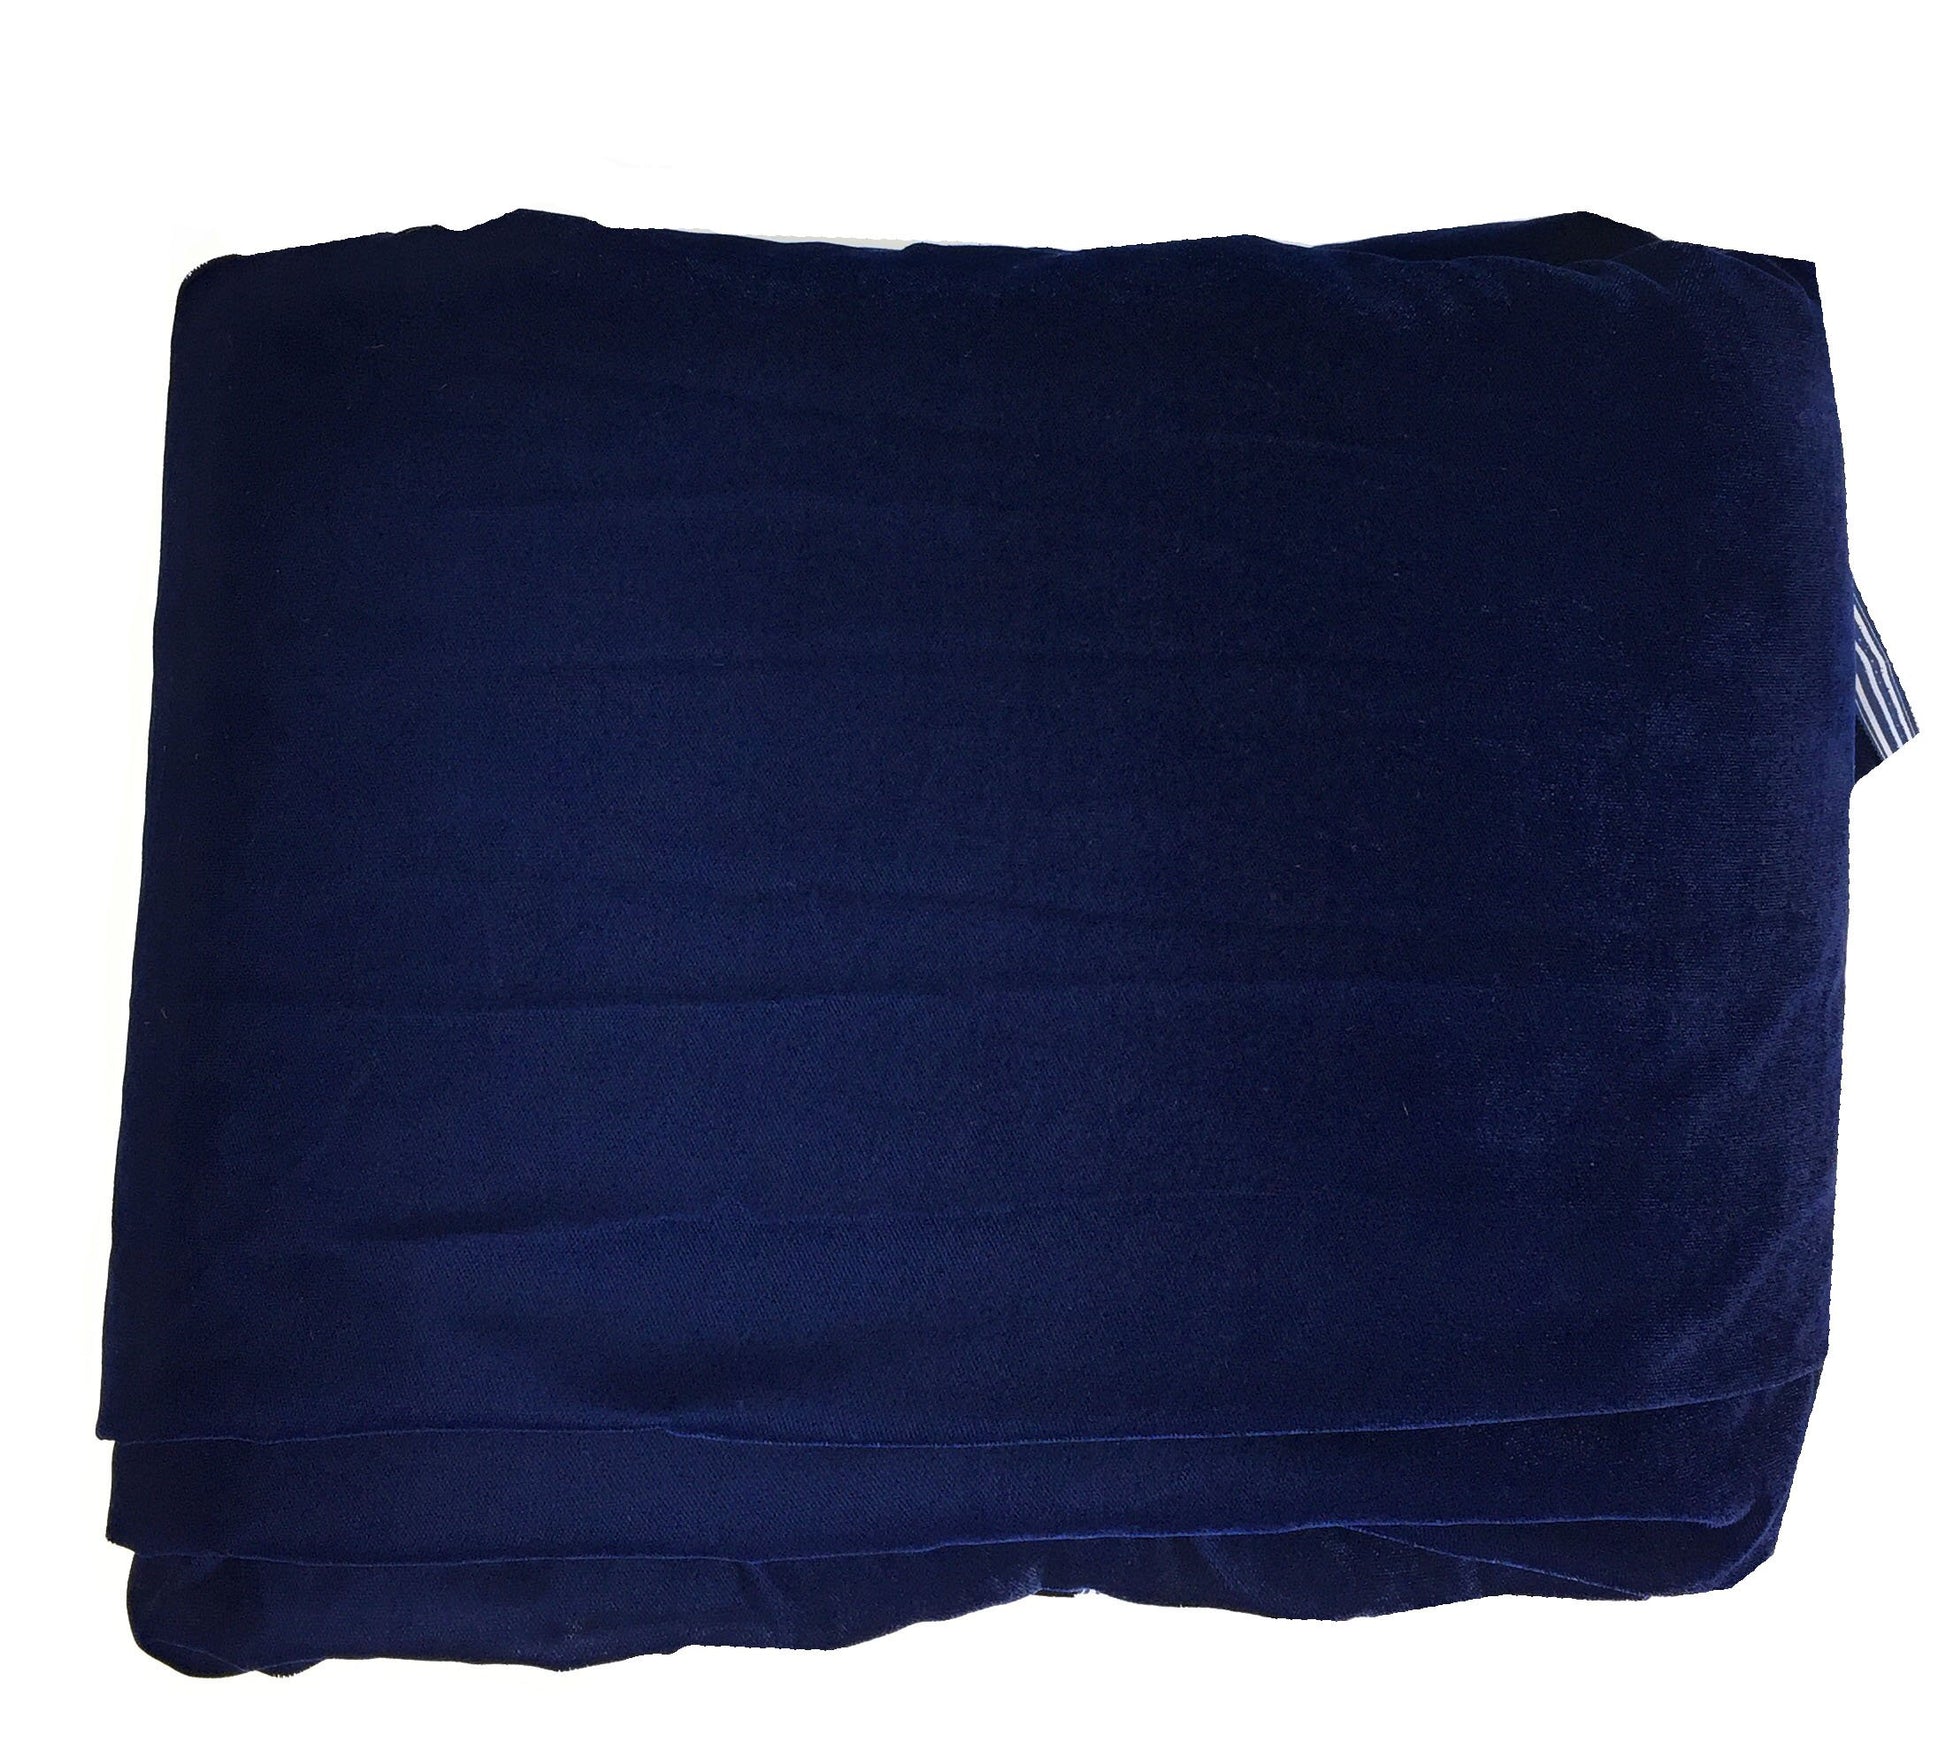 Soft blue Velvet Fabric Material